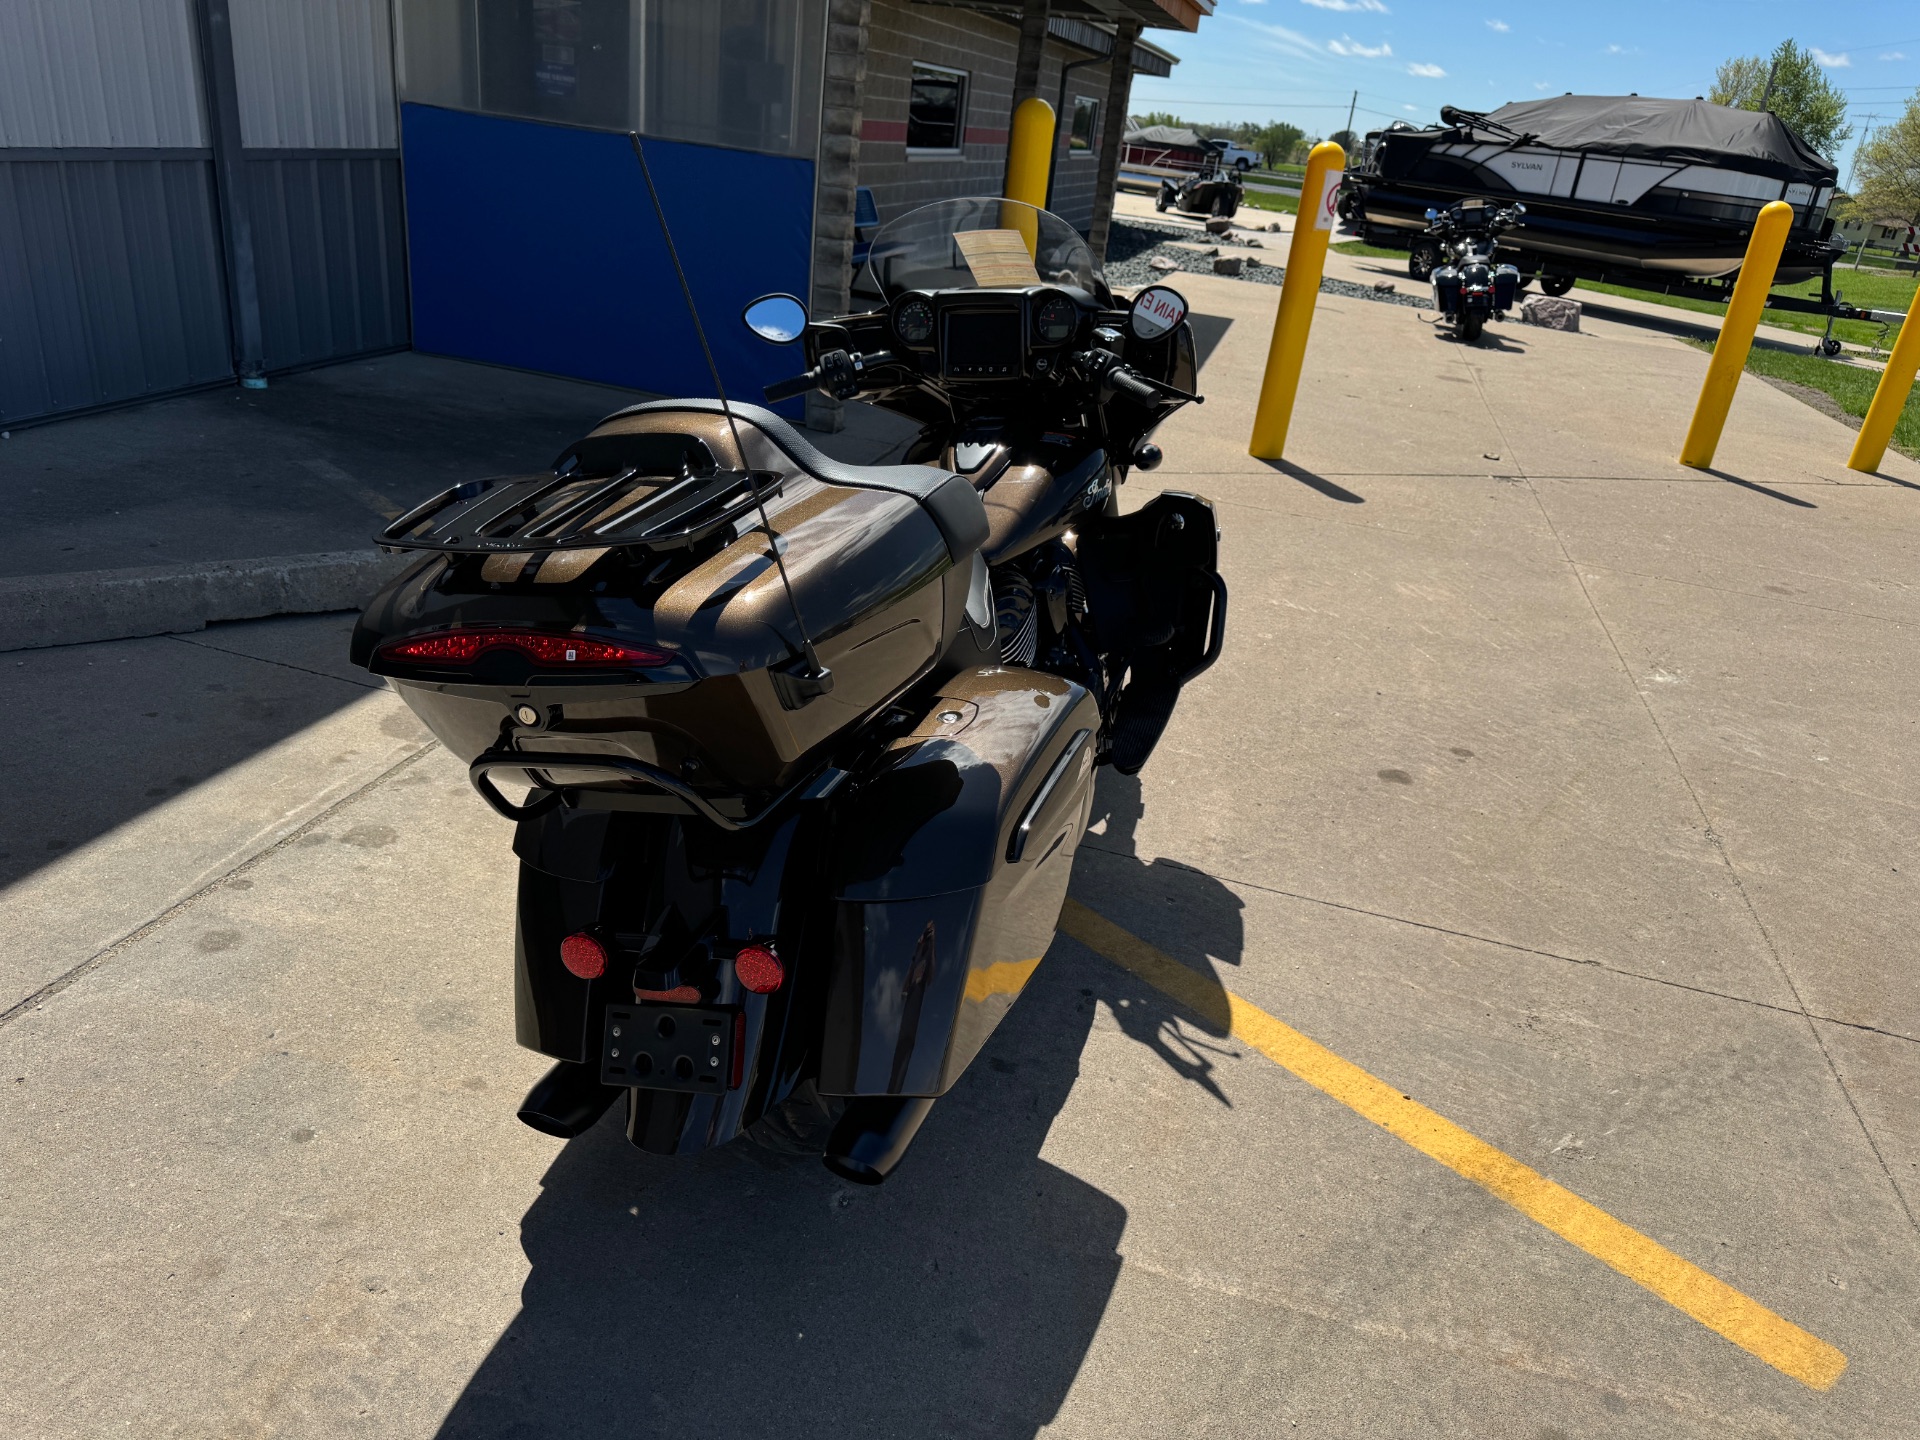 2023 Indian Motorcycle Roadmaster® Dark Horse® in Ottumwa, Iowa - Photo 4